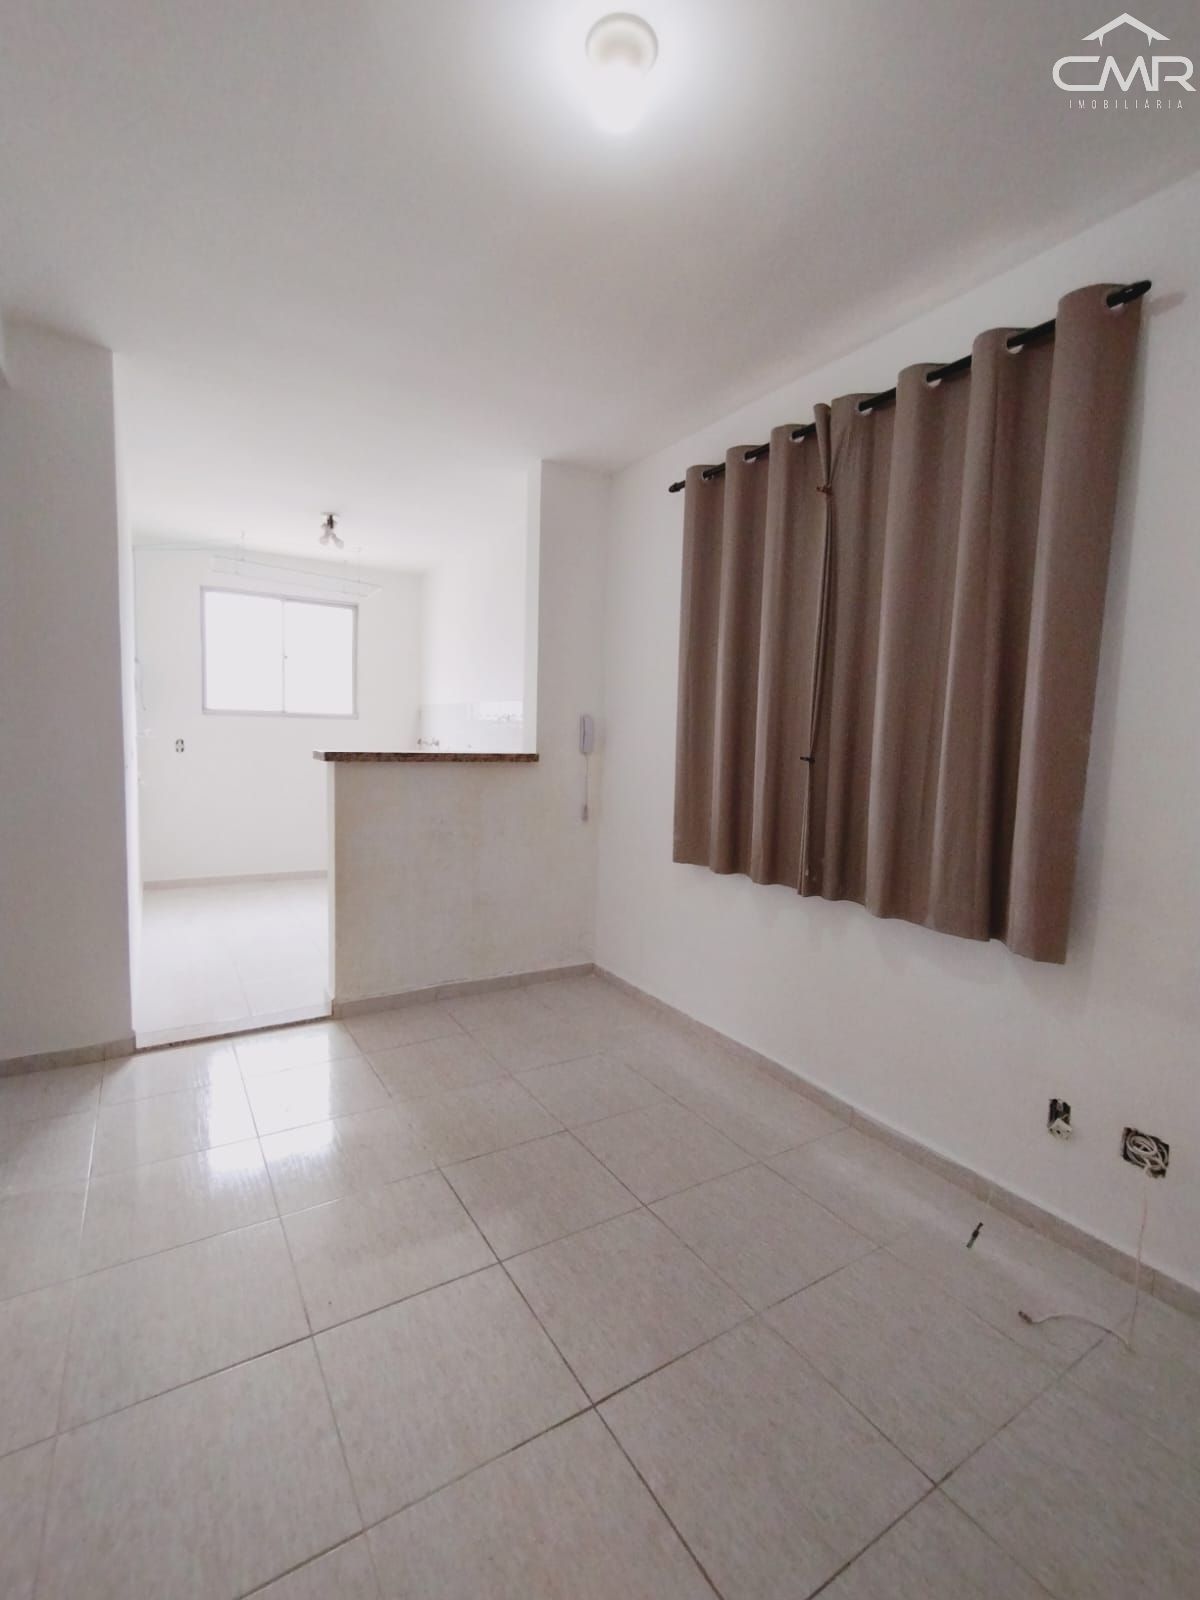 Apartamento  venda  no Campestre - Piracicaba, SP. Imveis